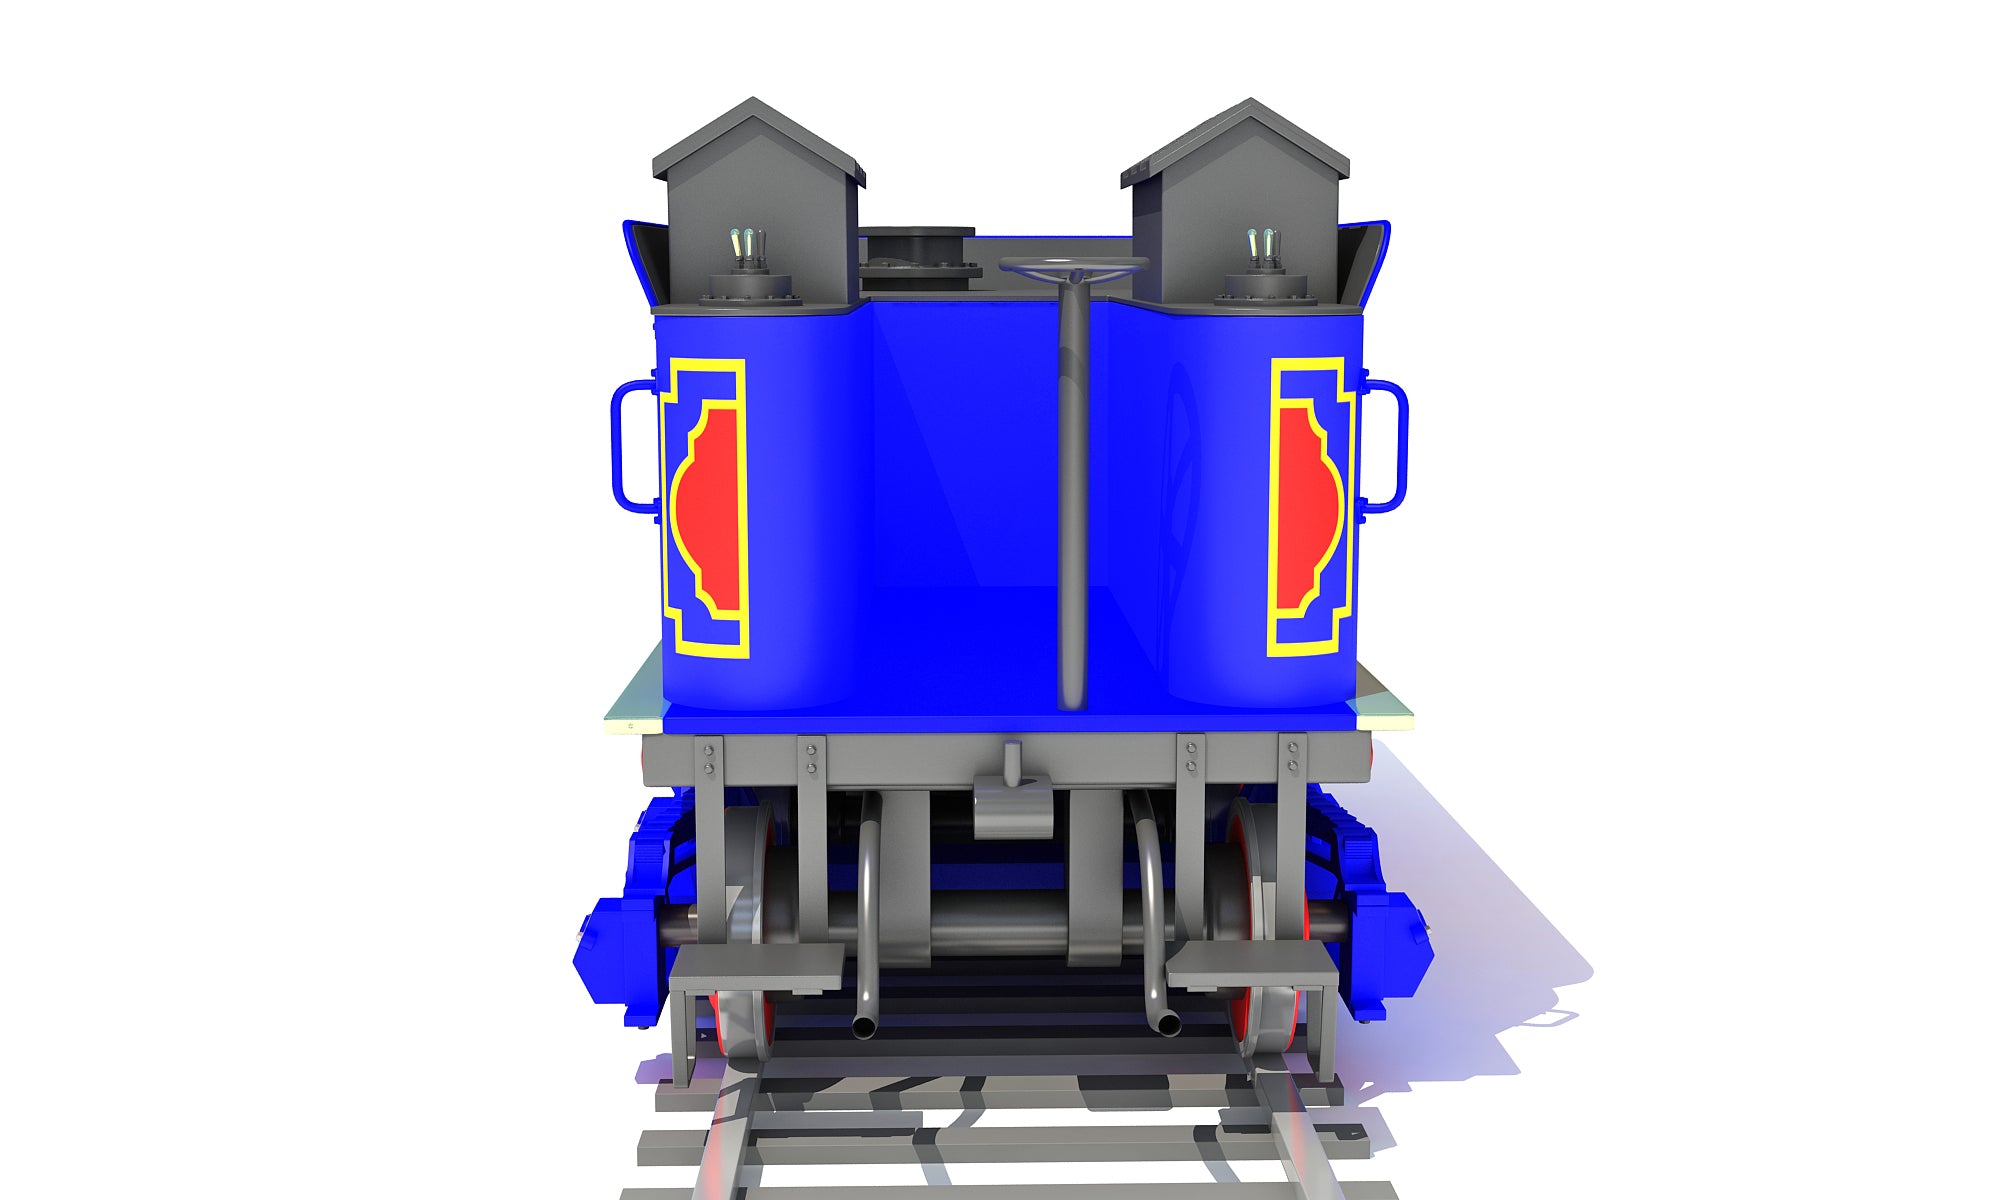 Train 3D Models